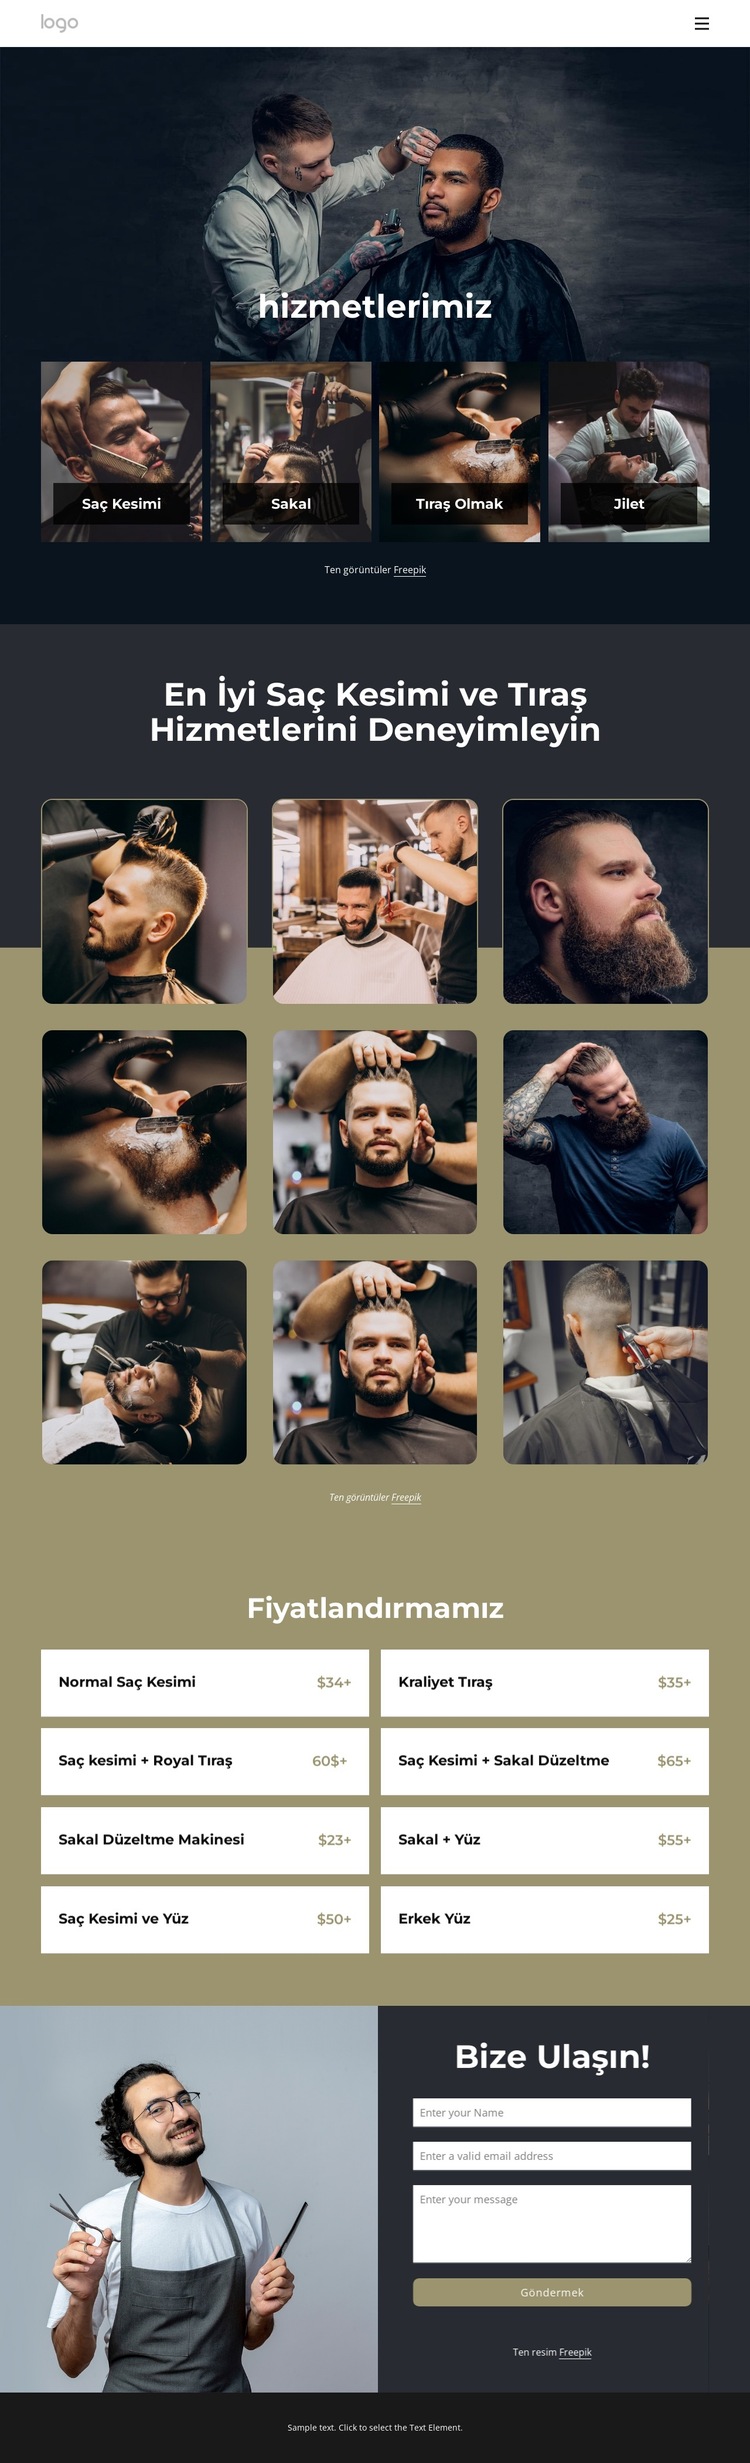 En iyi saç kesimi ve tıraş hizmetleri Web Sitesi Şablonu